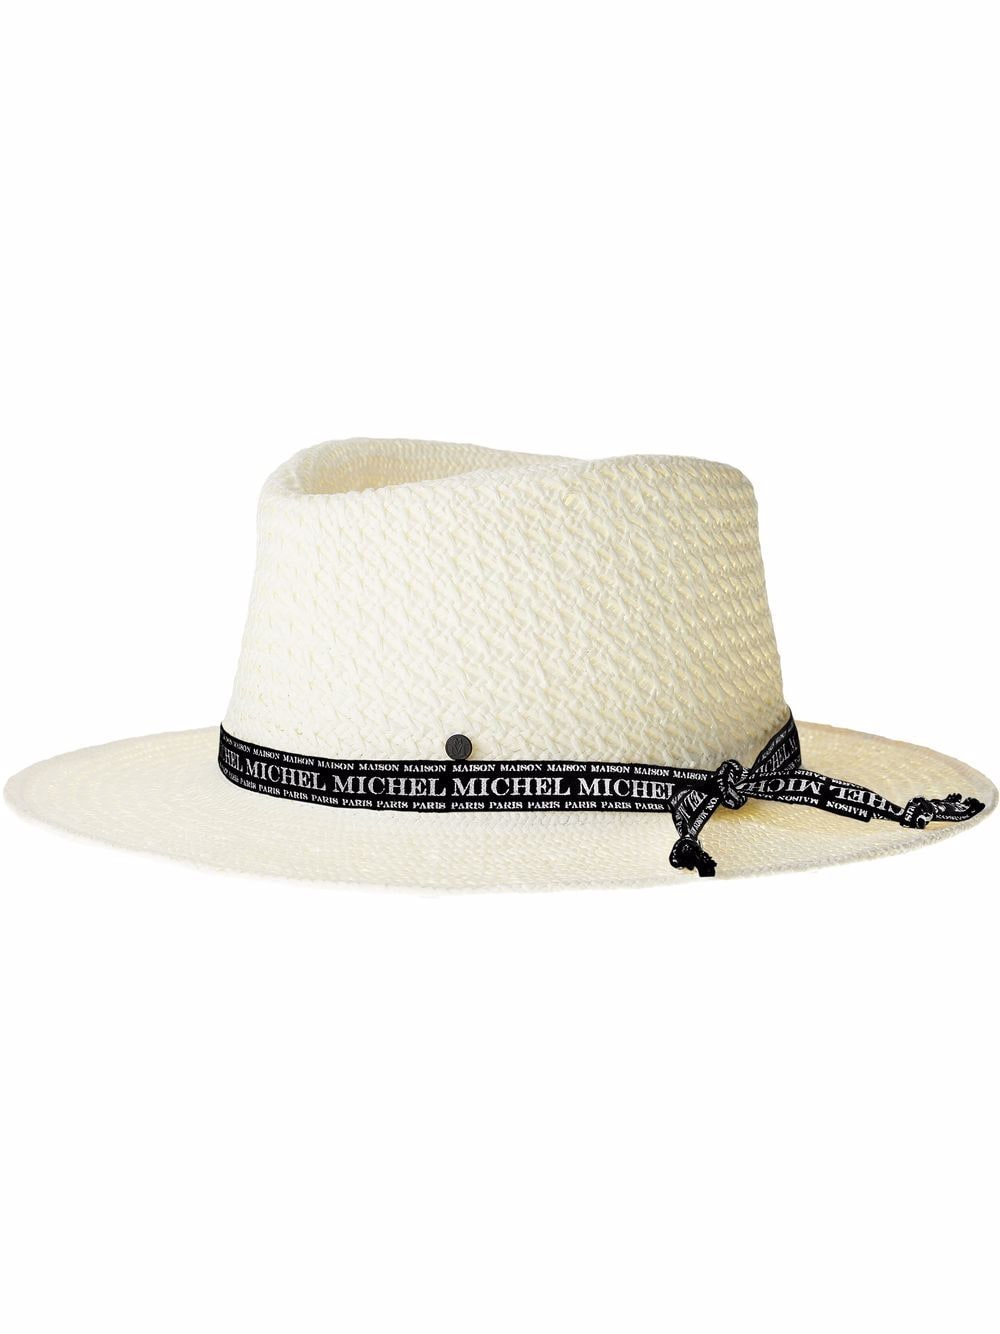 Maison Michel André straw Fedora hat - White von Maison Michel